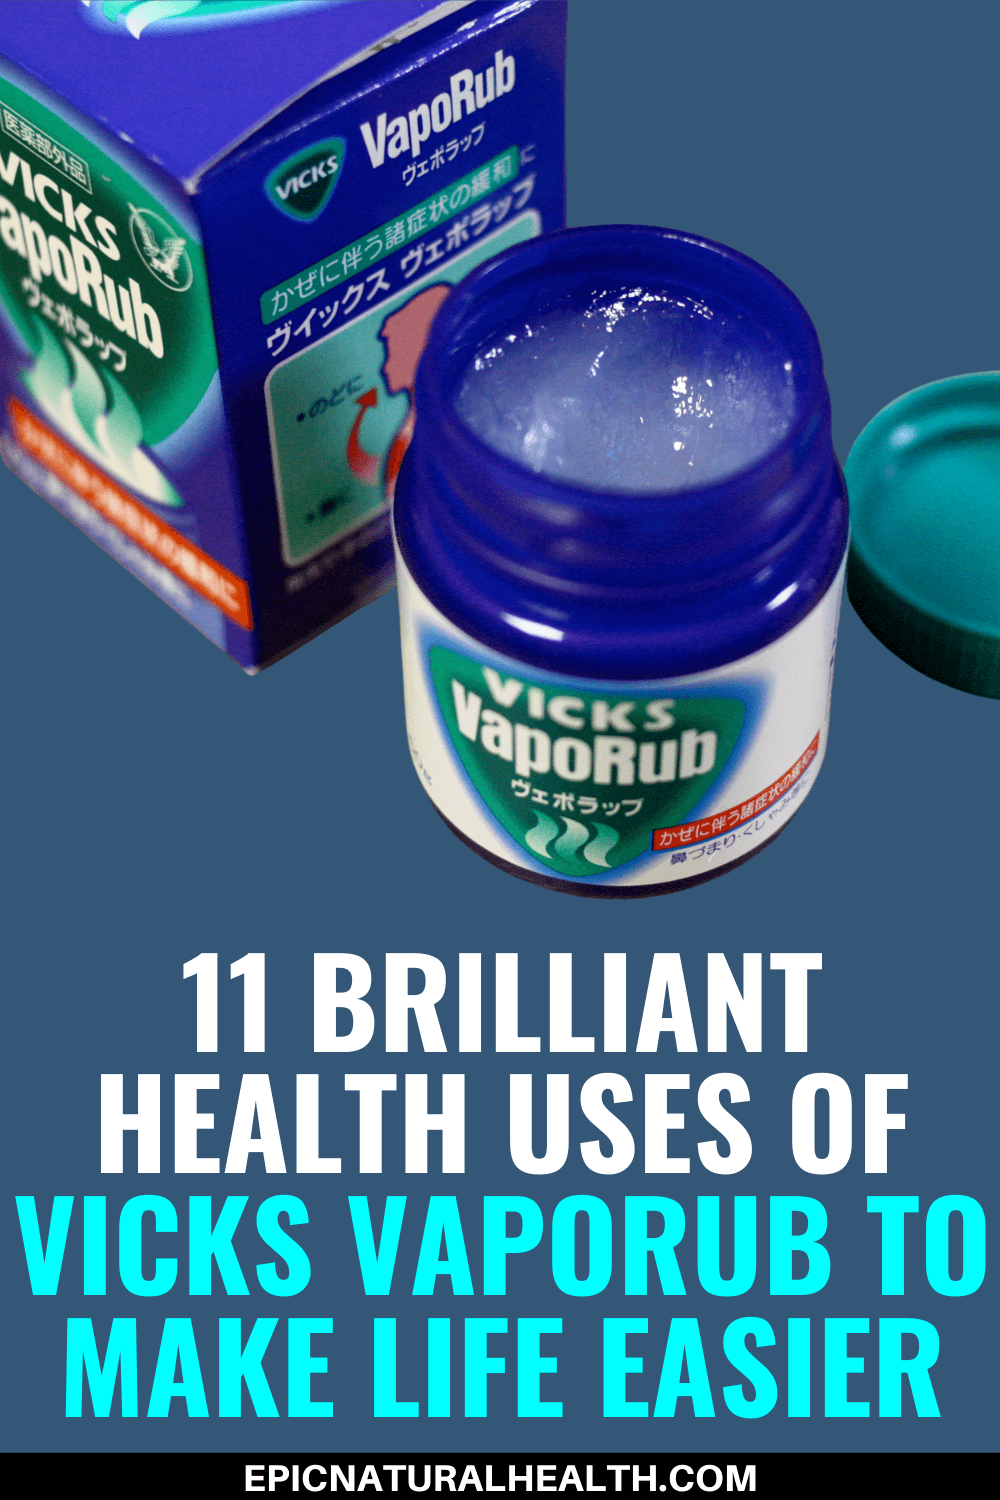 11 brilliant health uses of vicks vaporub to make life easier